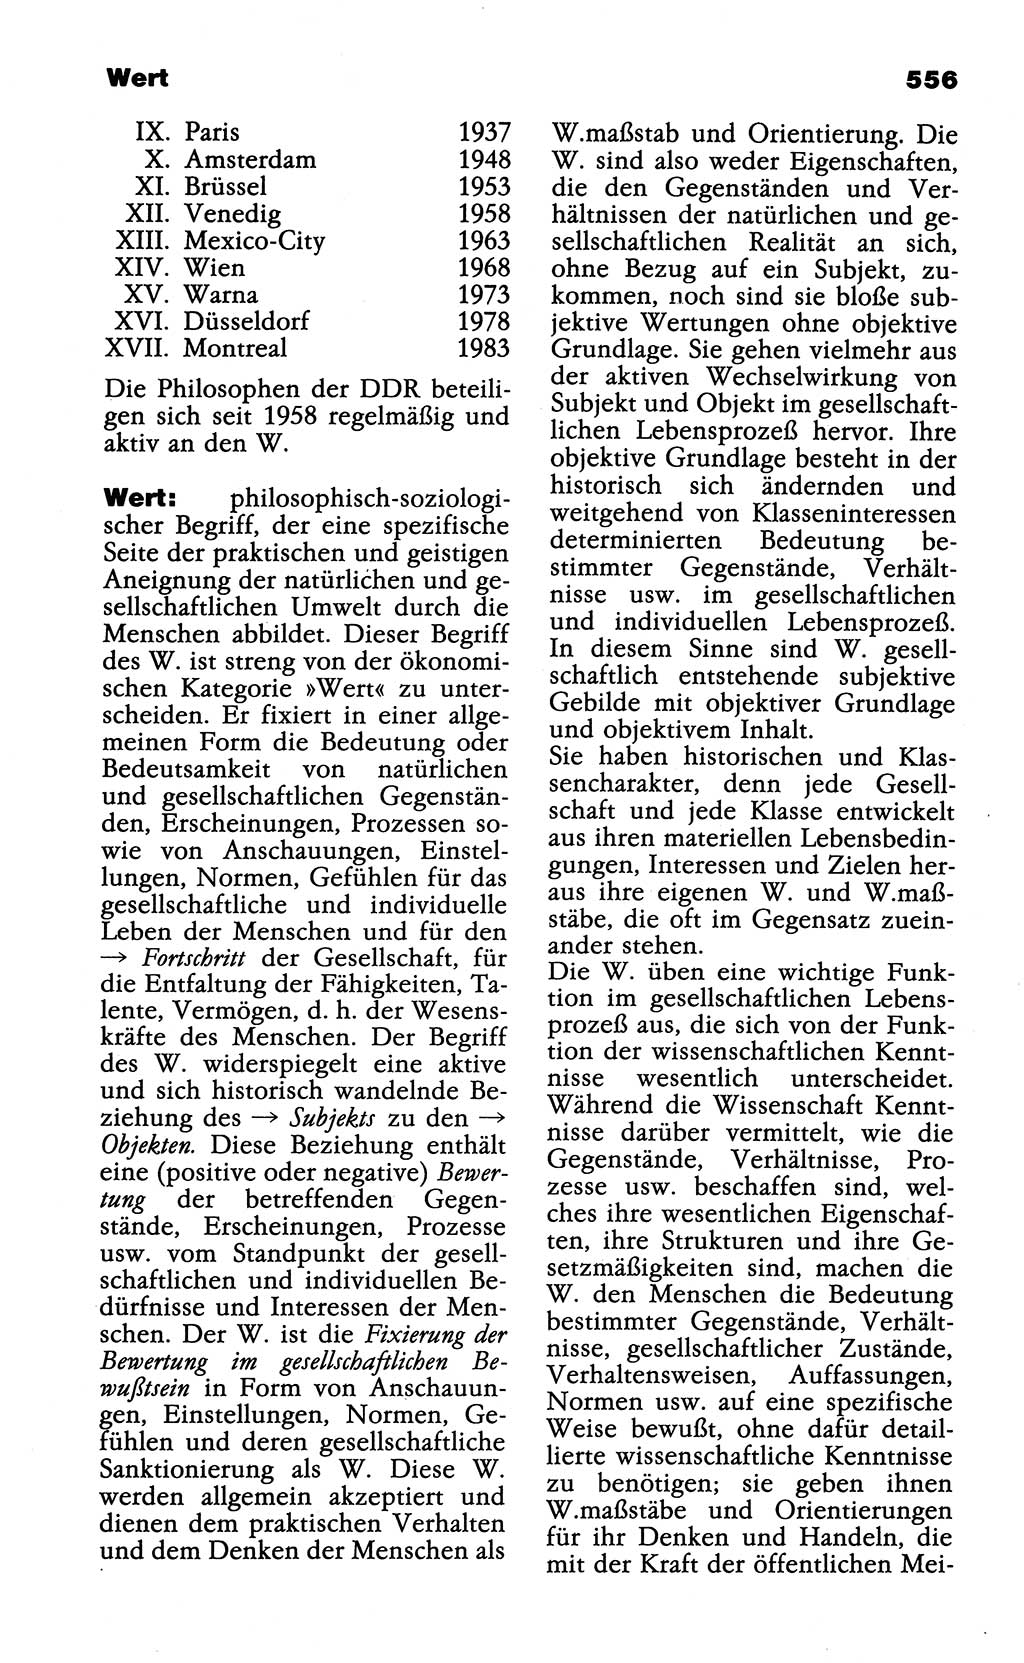 Wörterbuch der marxistisch-leninistischen Philosophie [Deutsche Demokratische Republik (DDR)] 1985, Seite 556 (Wb. ML Phil. DDR 1985, S. 556)